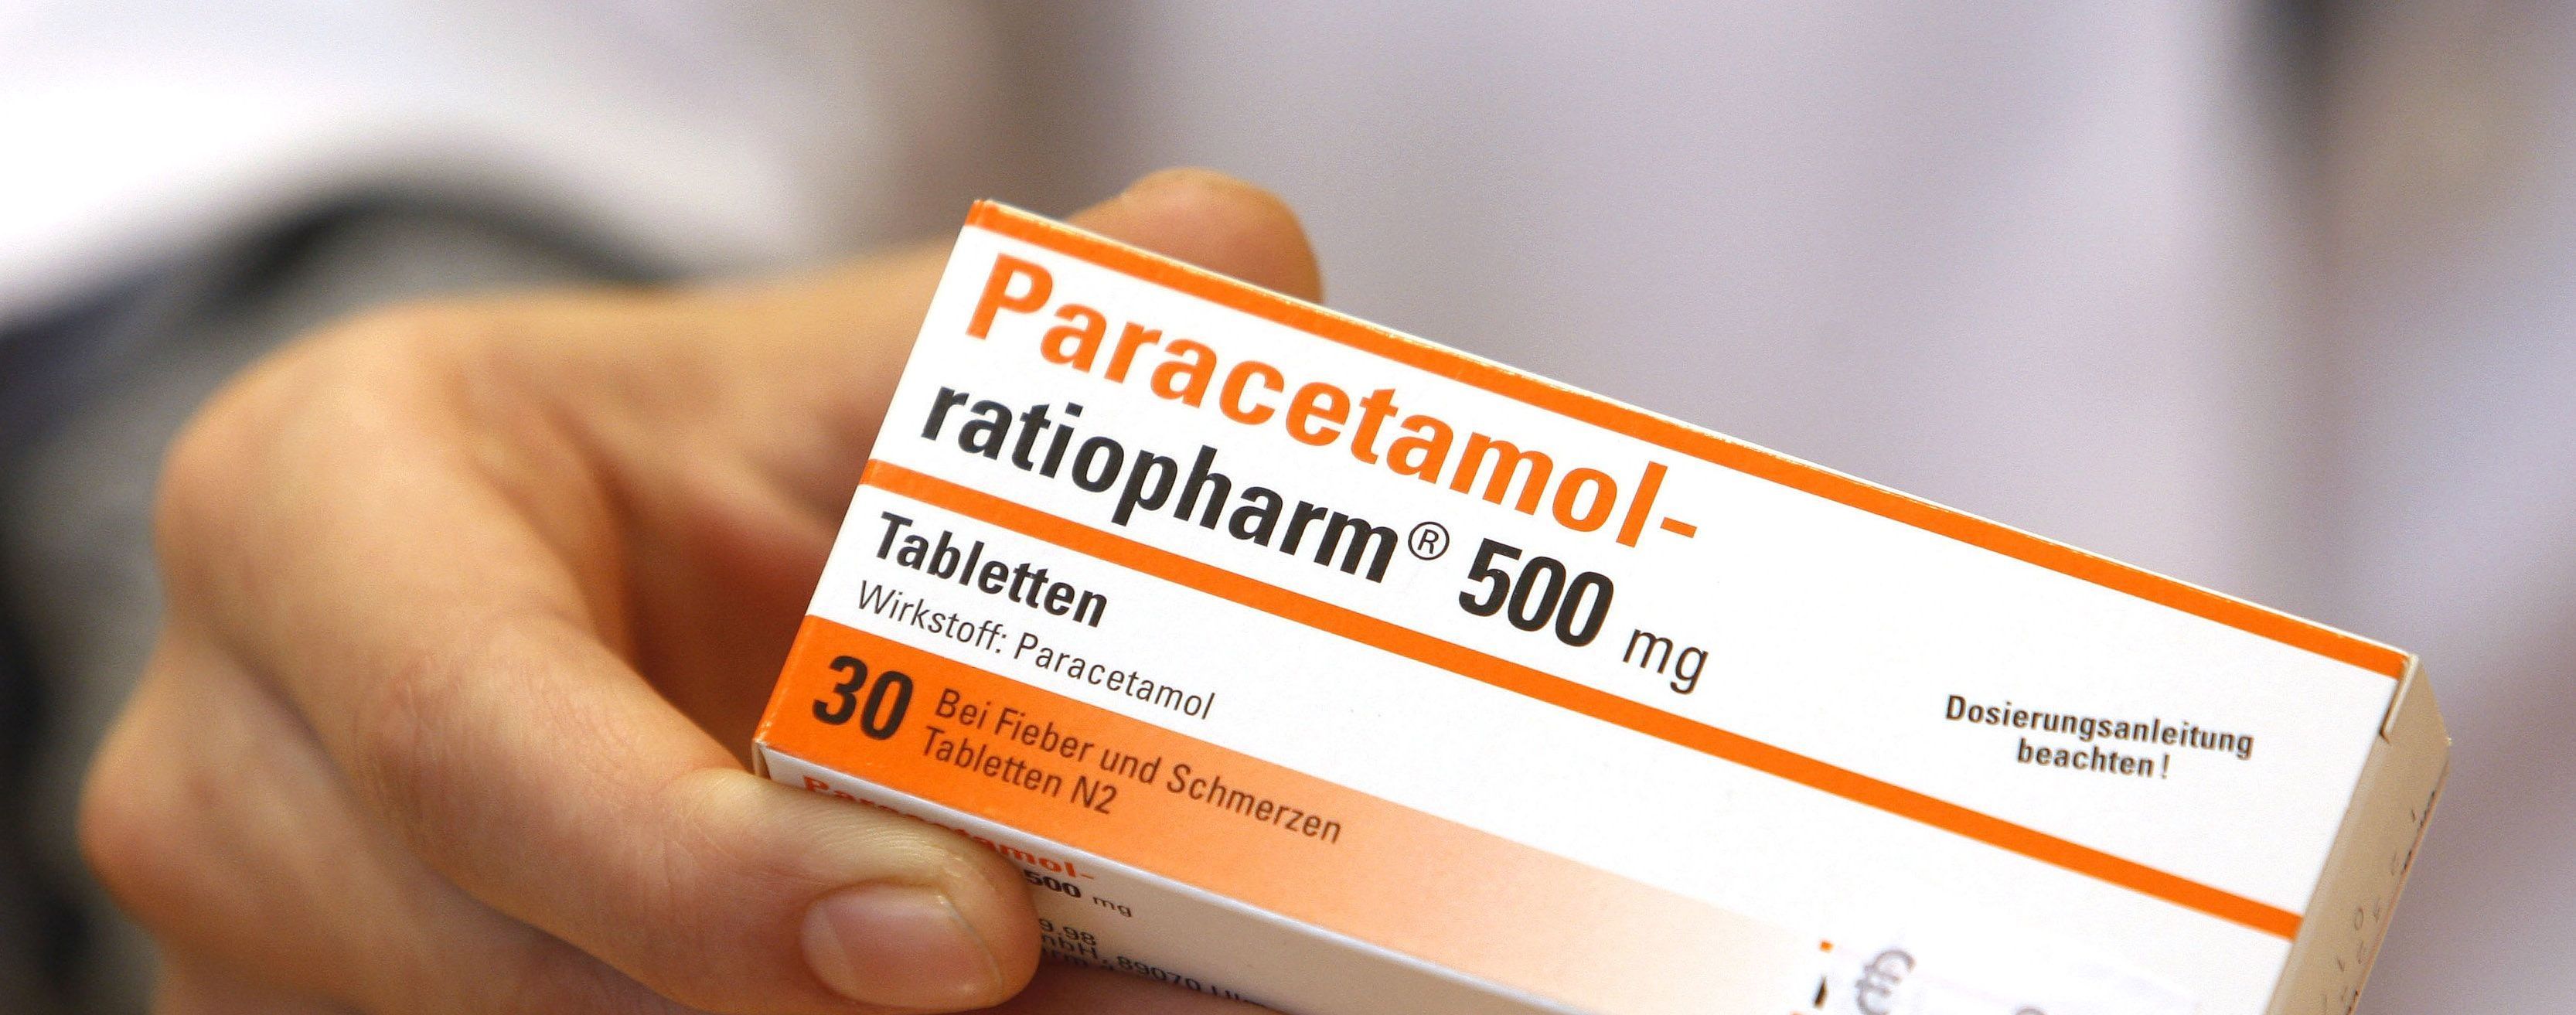 Принимать ли парацетамол при коронавирусе: советы ученых и фармацевтов